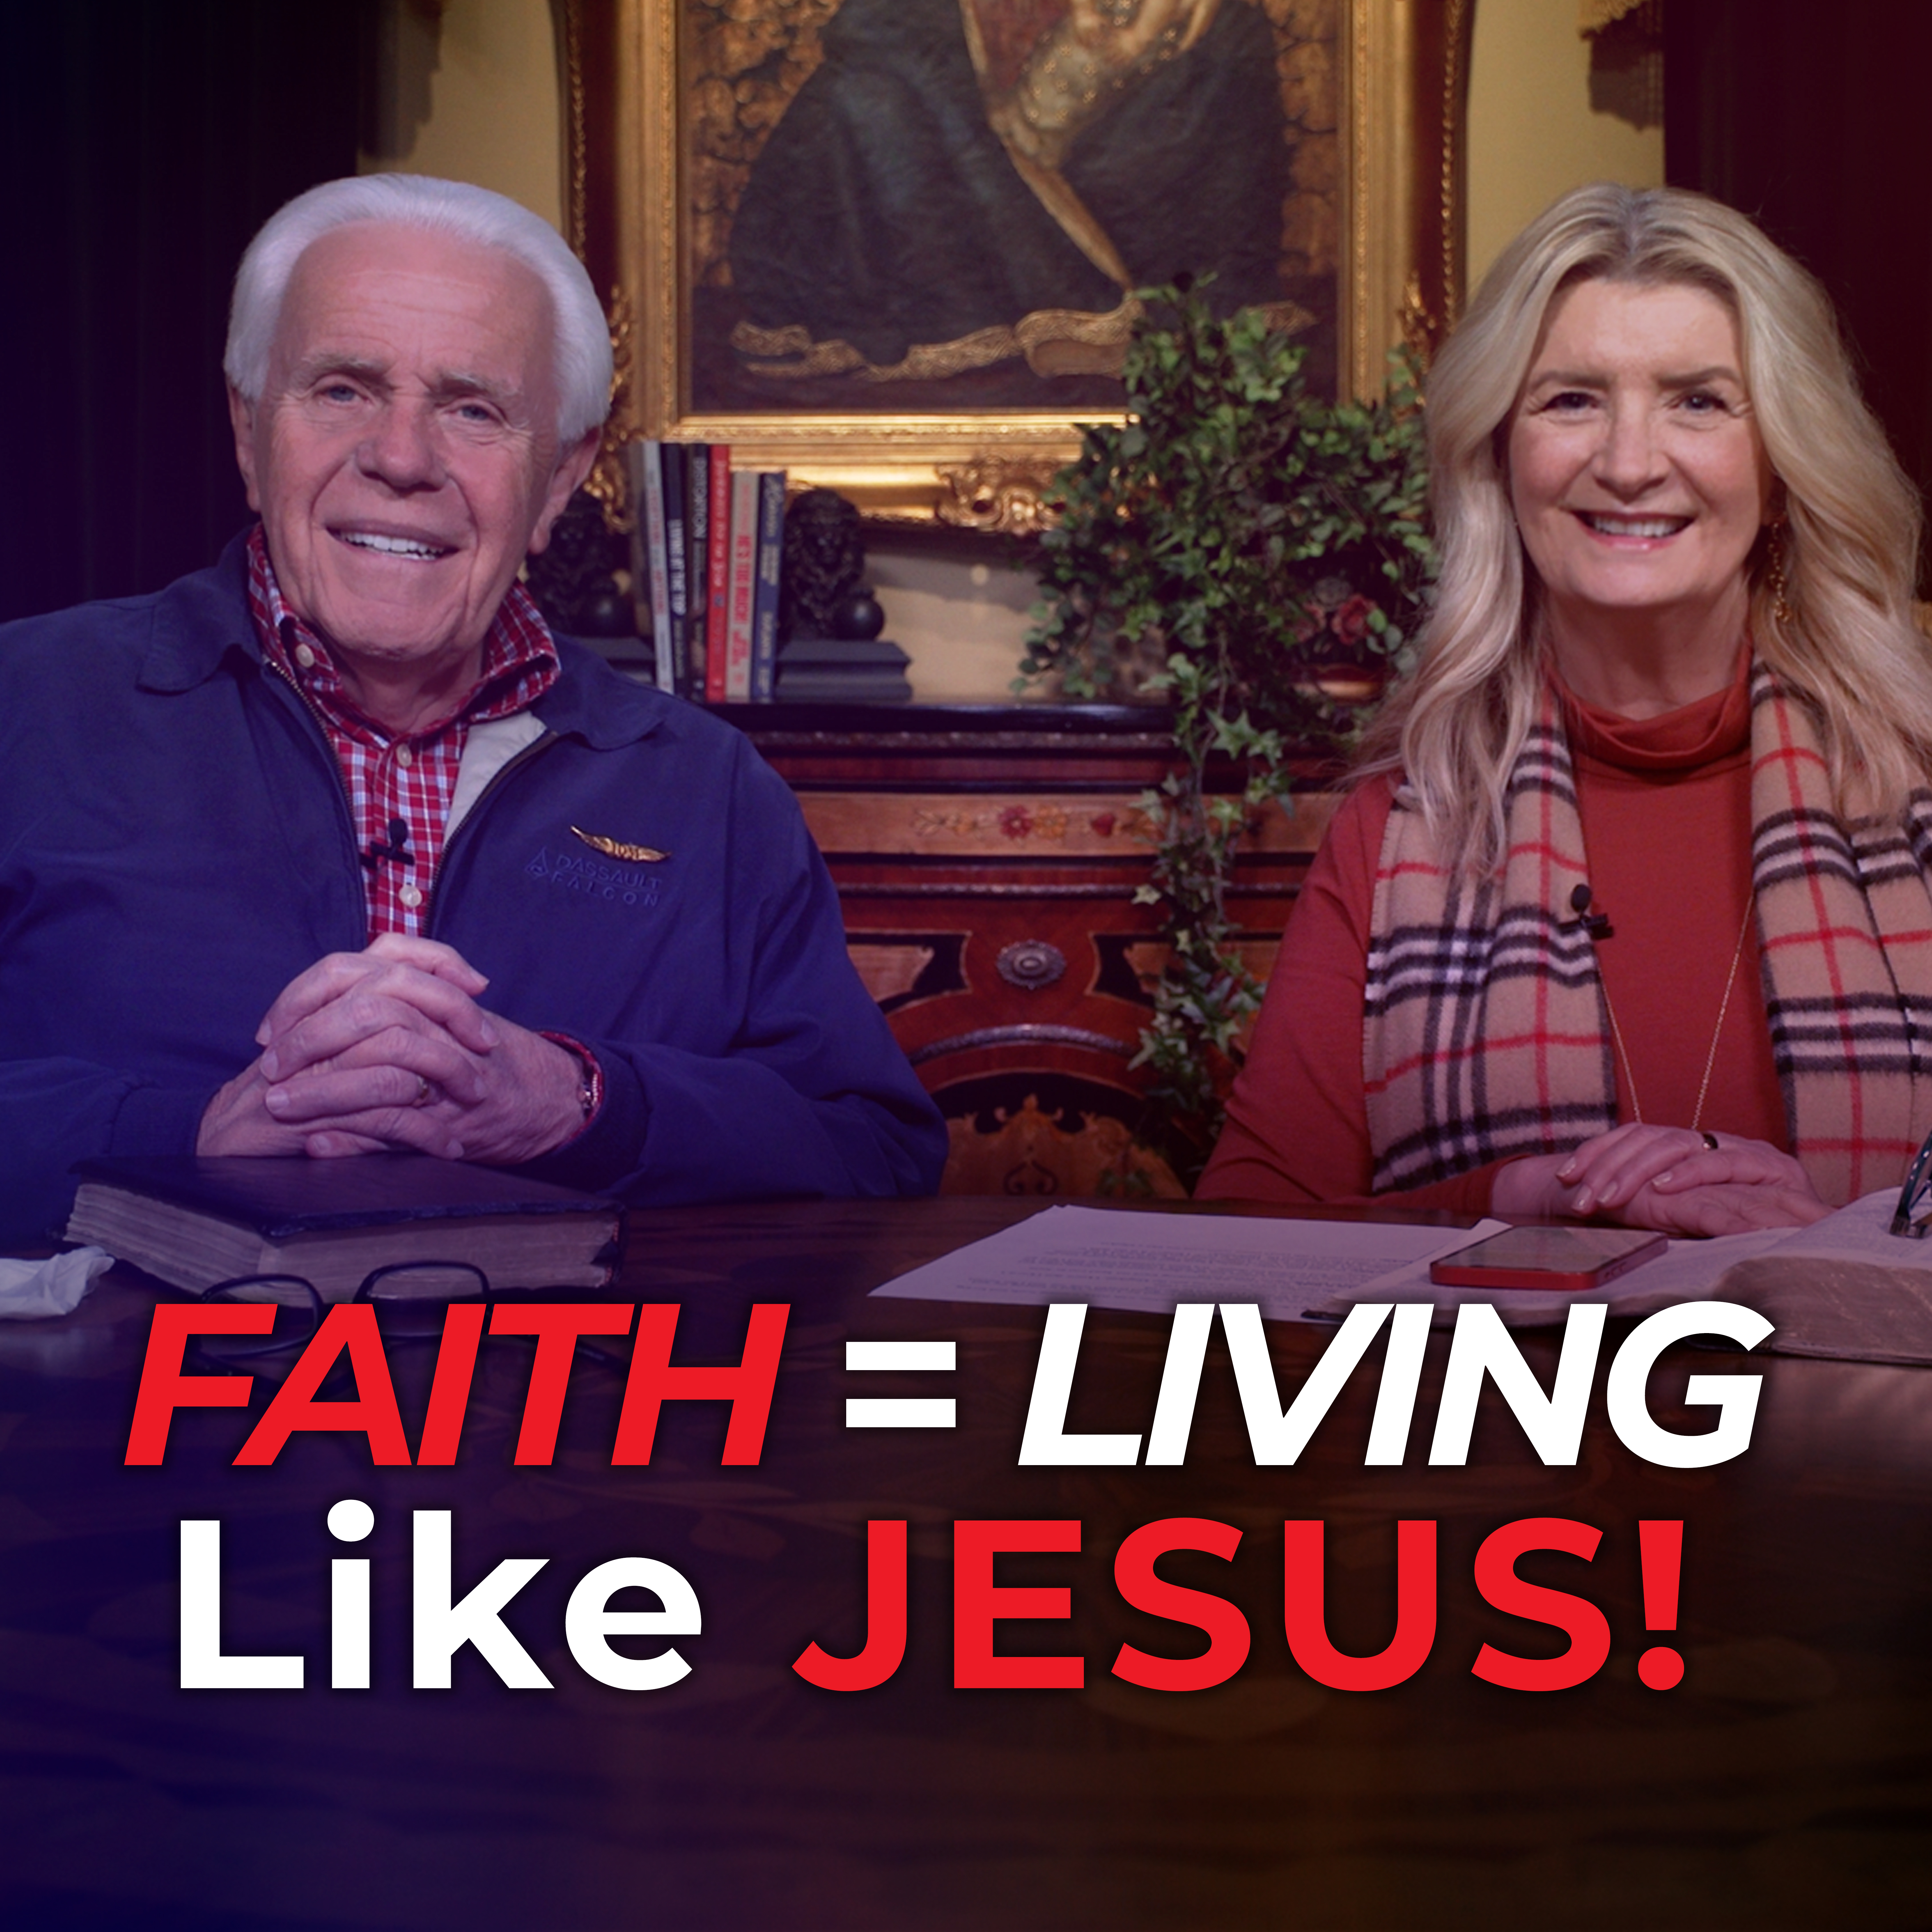 Faith = Living Like Jesus!